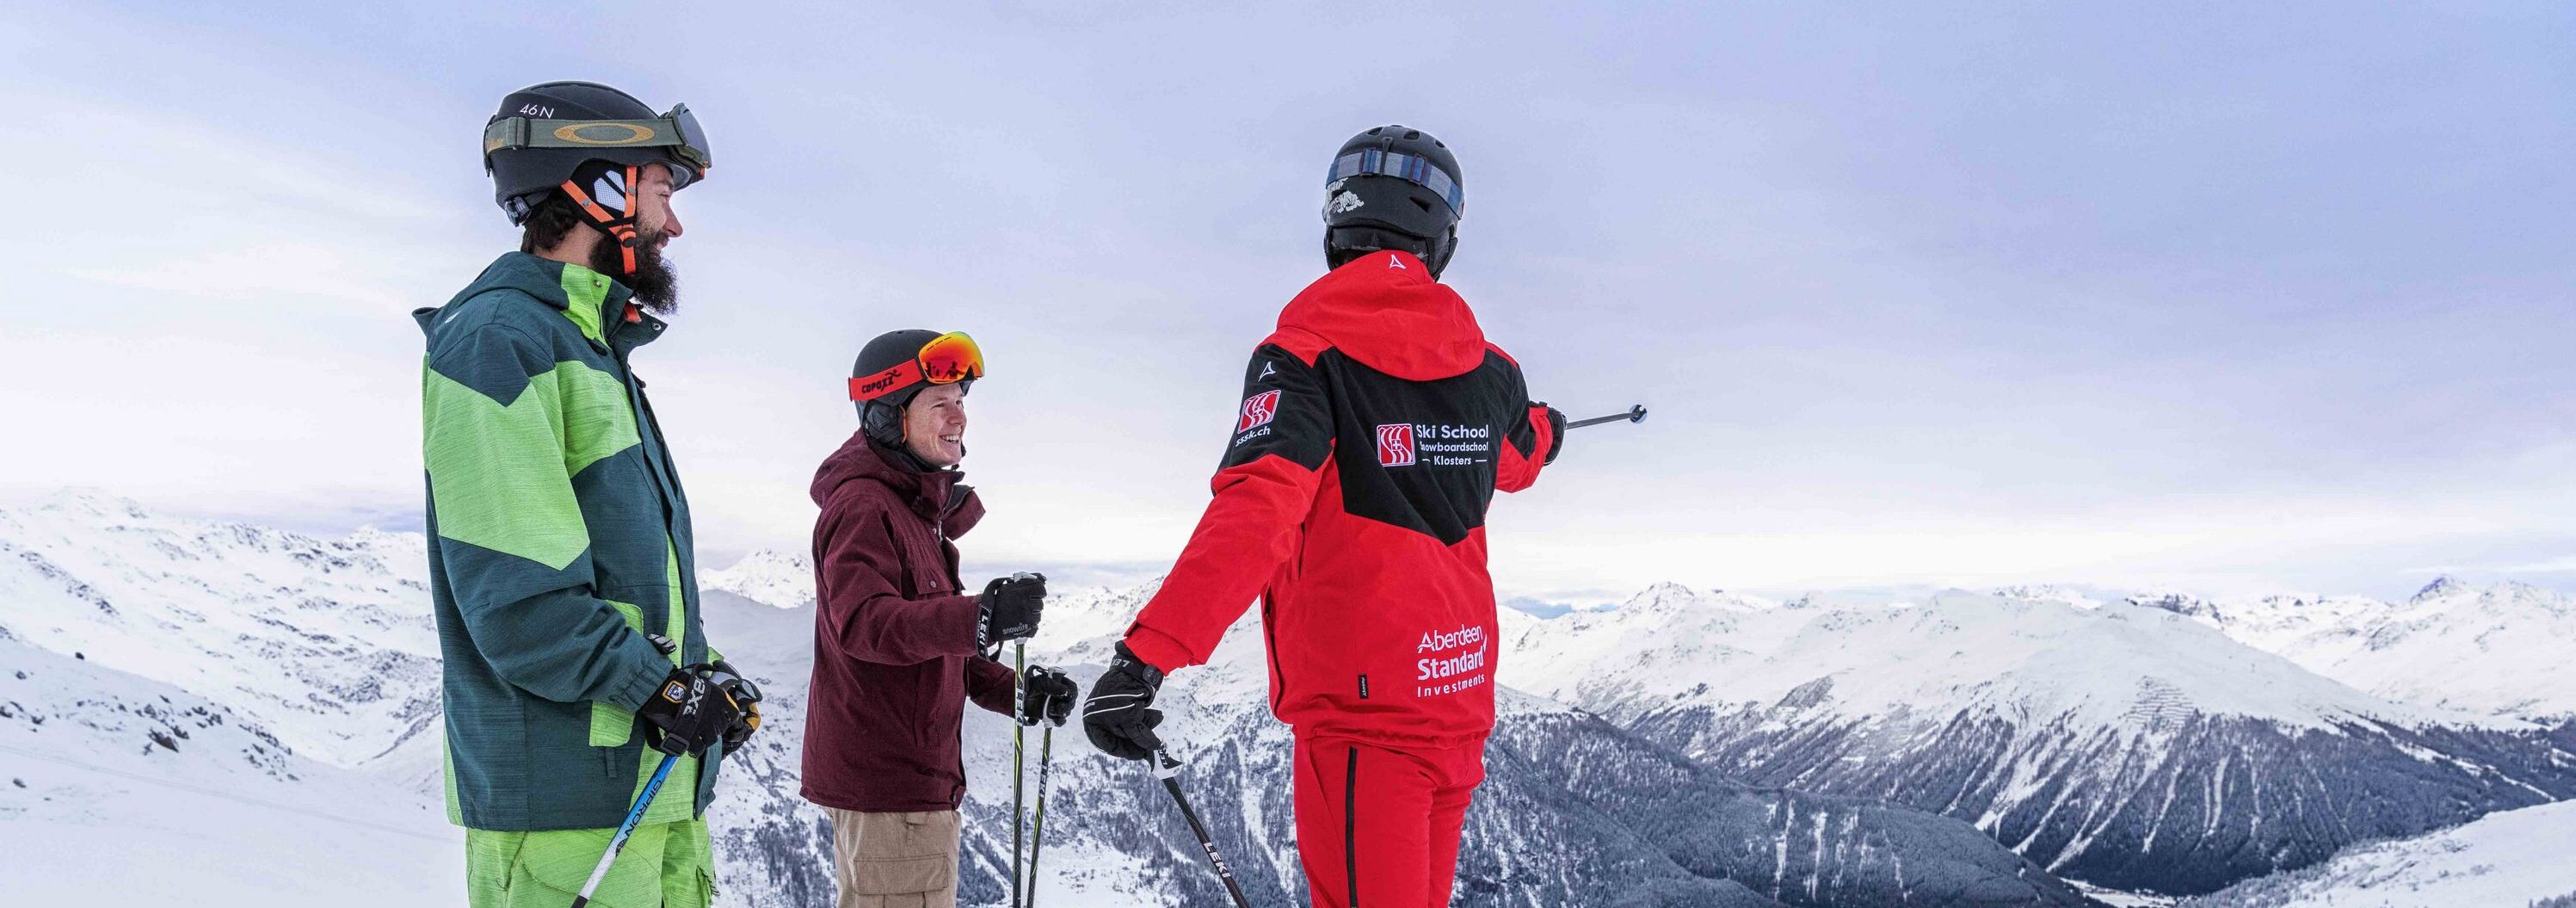 Skikurs für Erwachsene mit zwei Teilnehmern und einem Skilehrer der Skischule Klosters